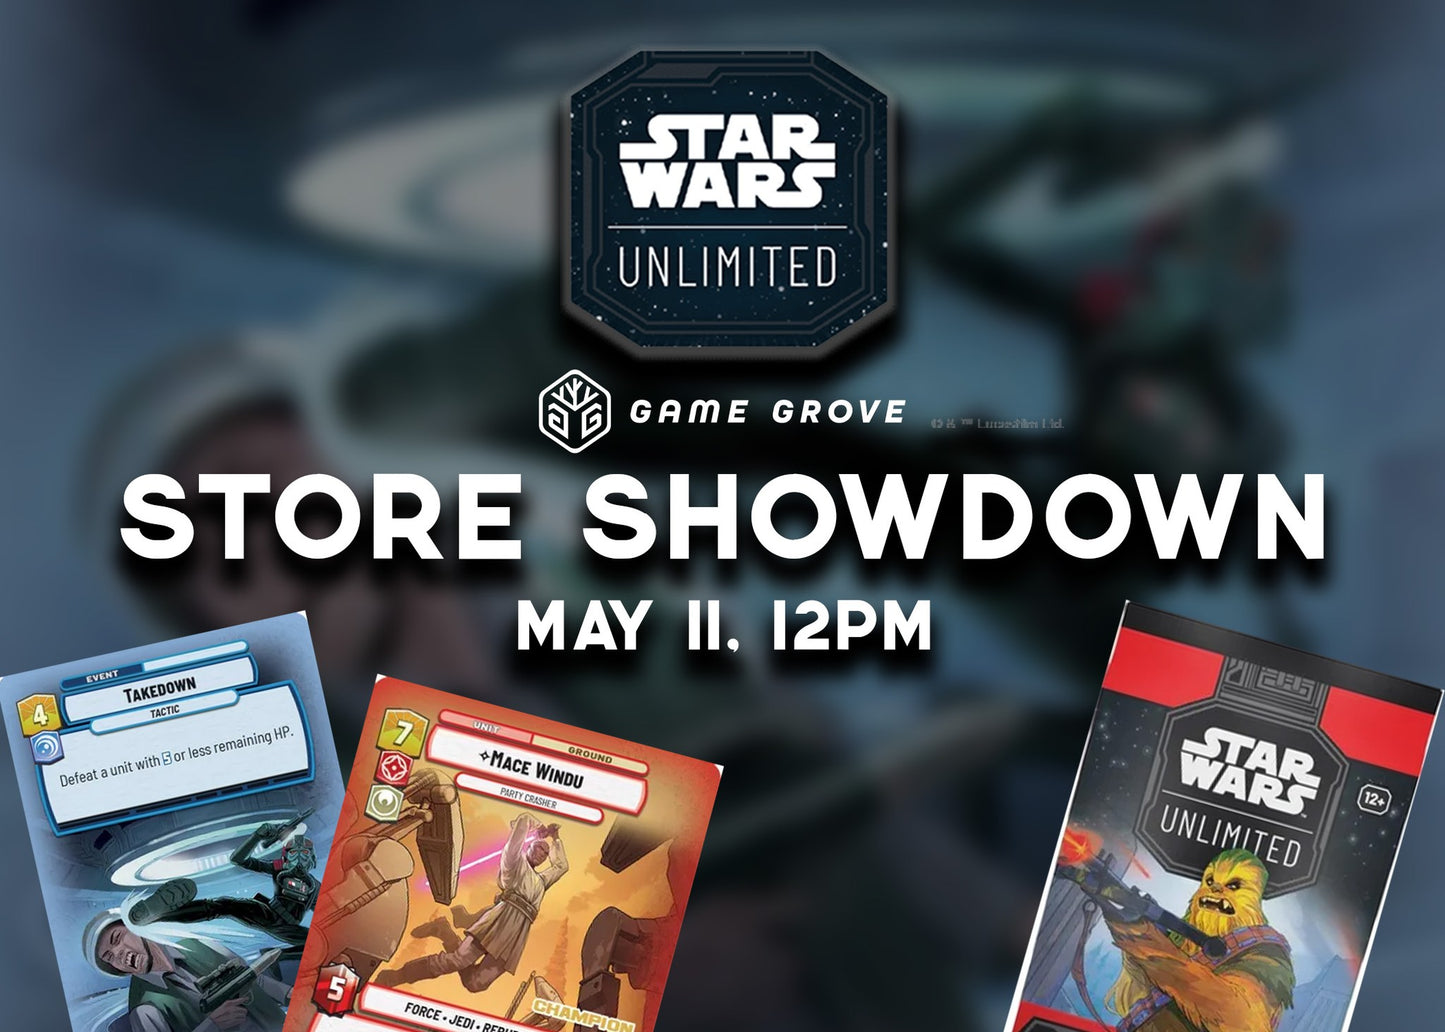 Star Wars Store Showdown - May 11 at Noon